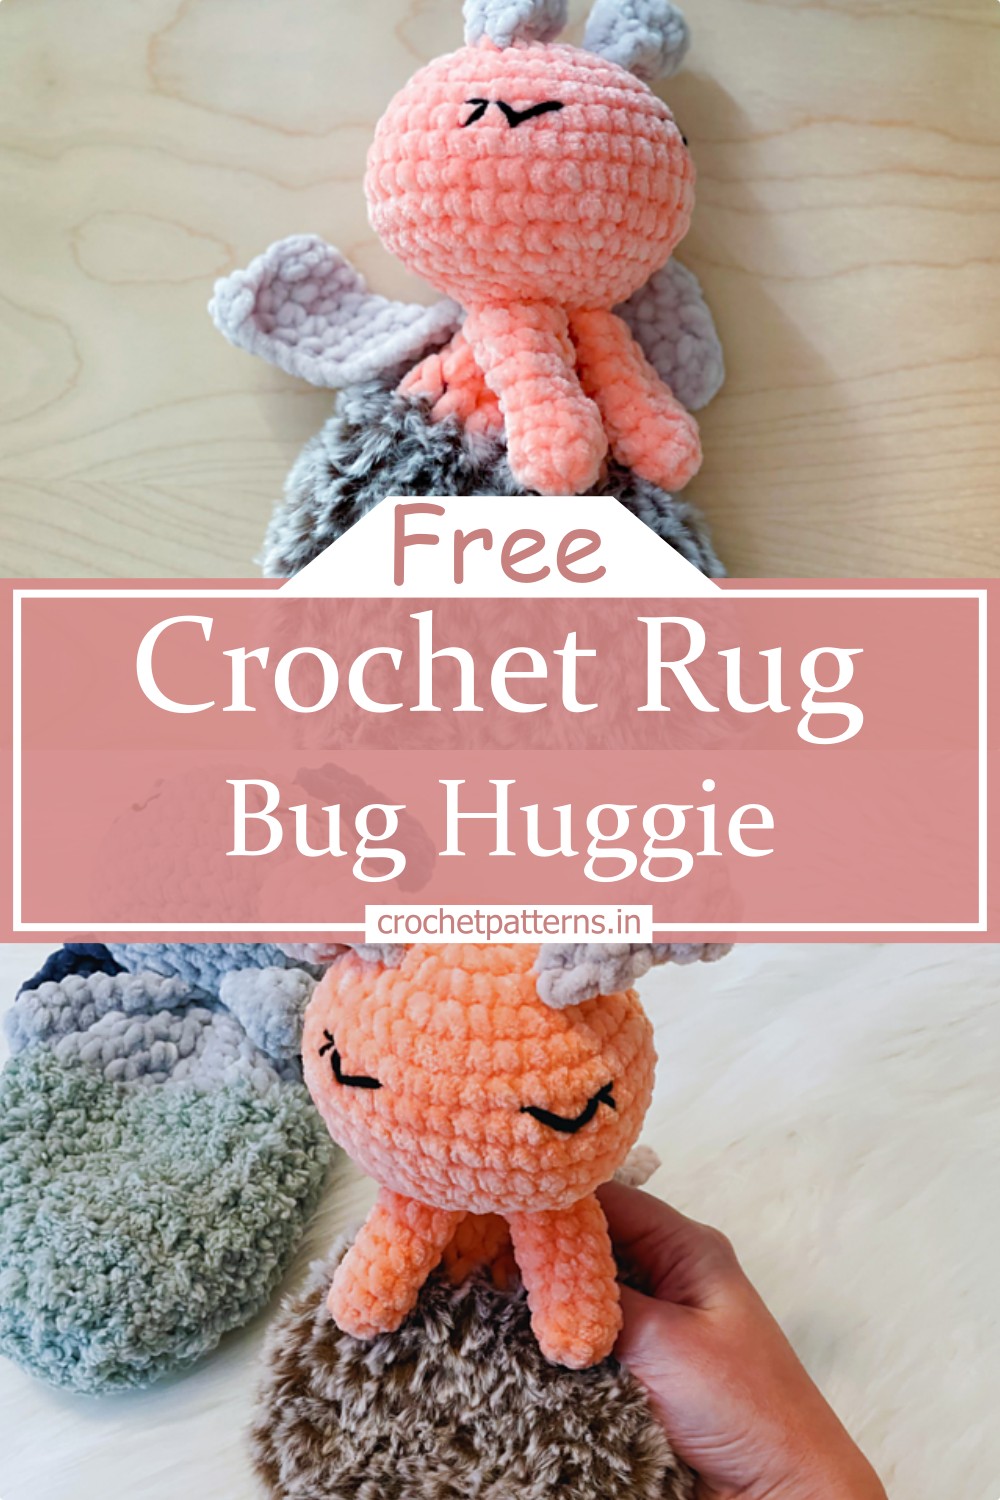 Crochet Rug Bug Huggie